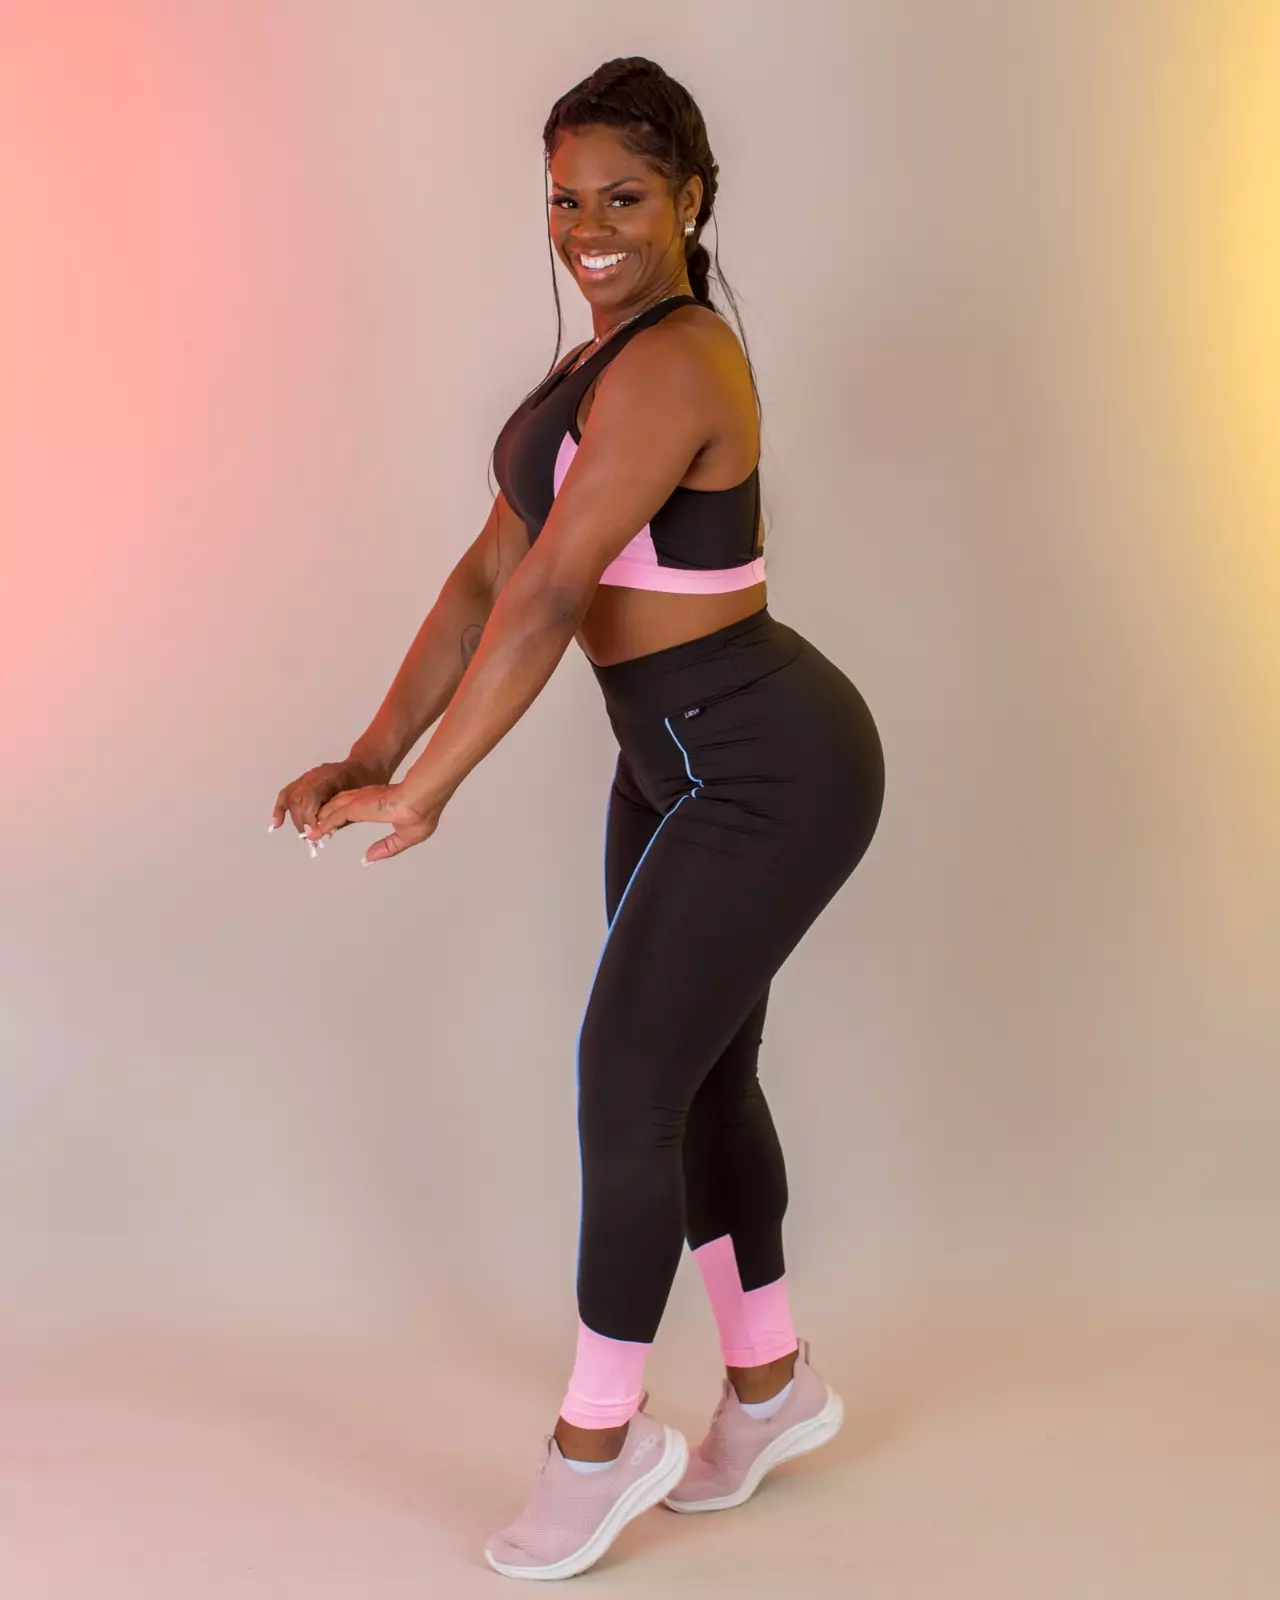 Comprar Conjunto legging Candy Pink com Serenity - a partir de R$53,42 -  Lievi Fitness